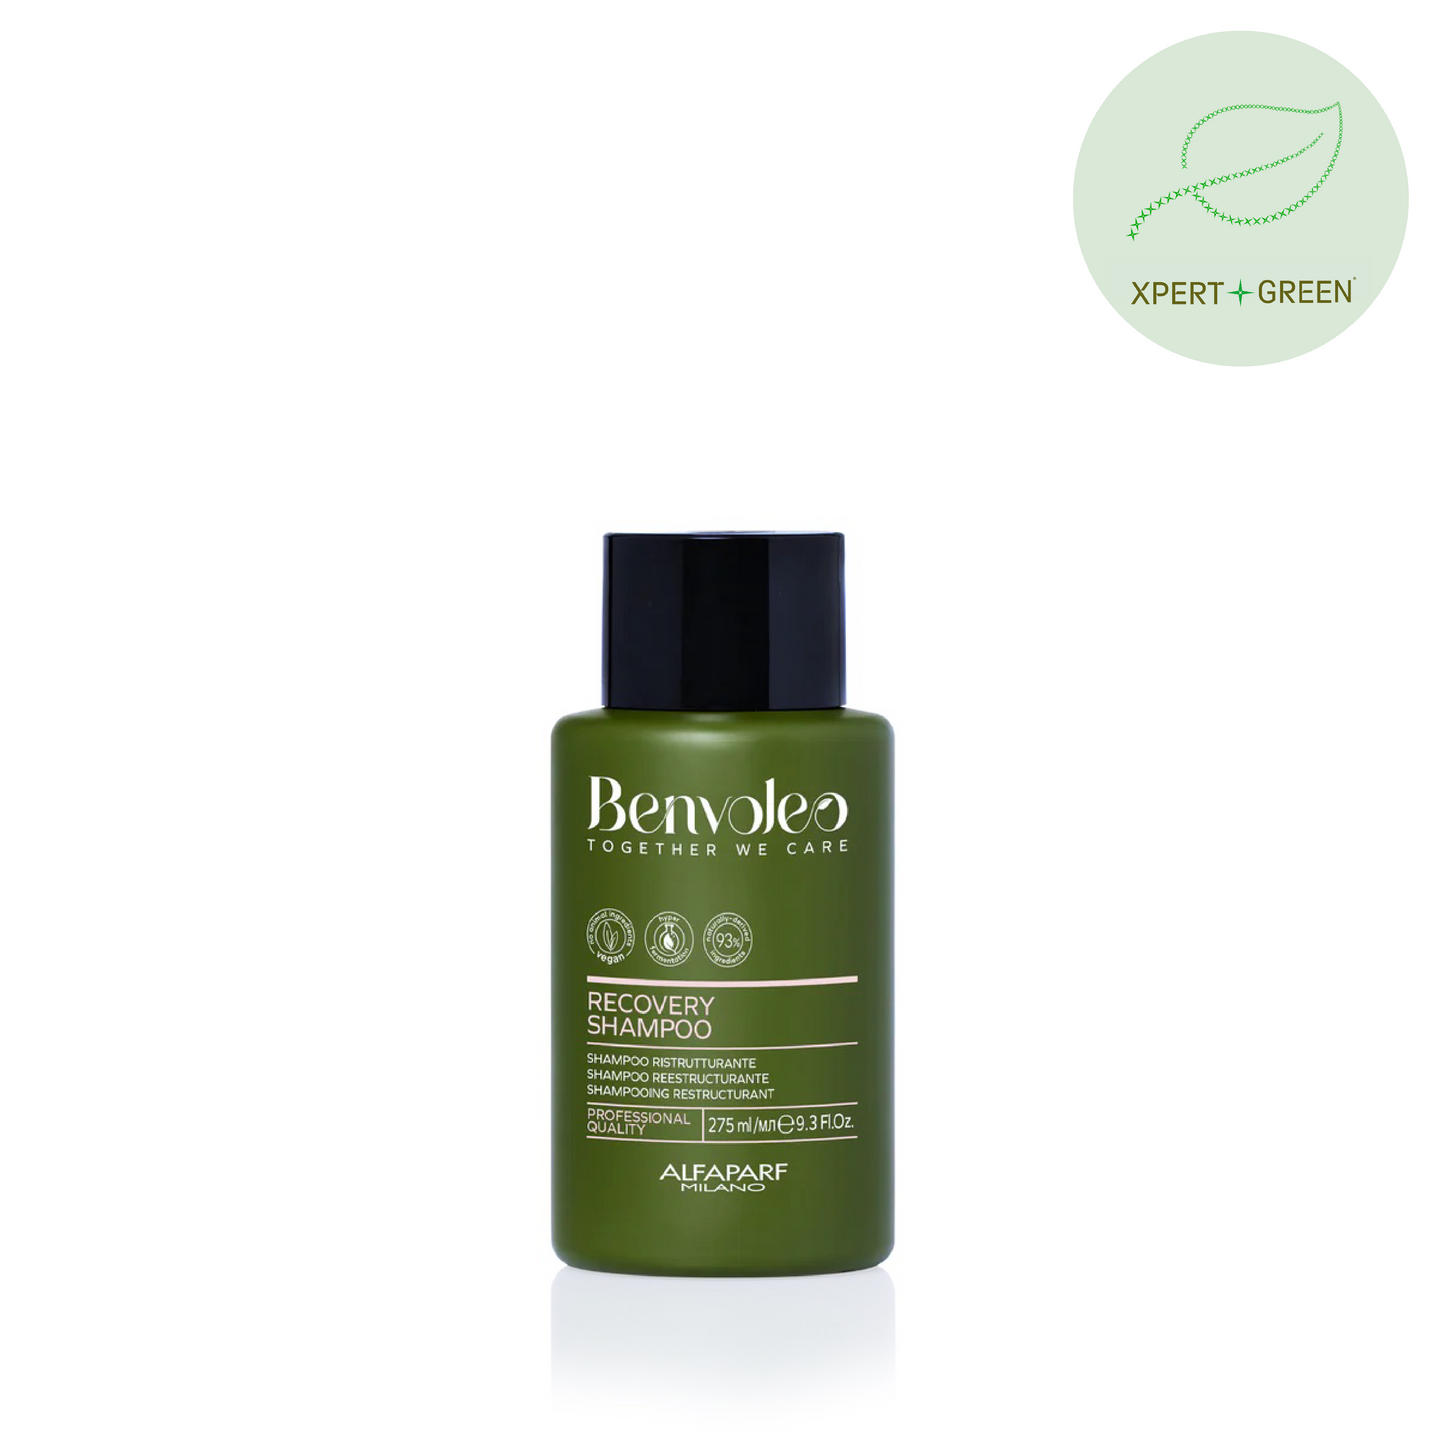 Benvoleo Recovery Shampoo 275ml Alfaparf